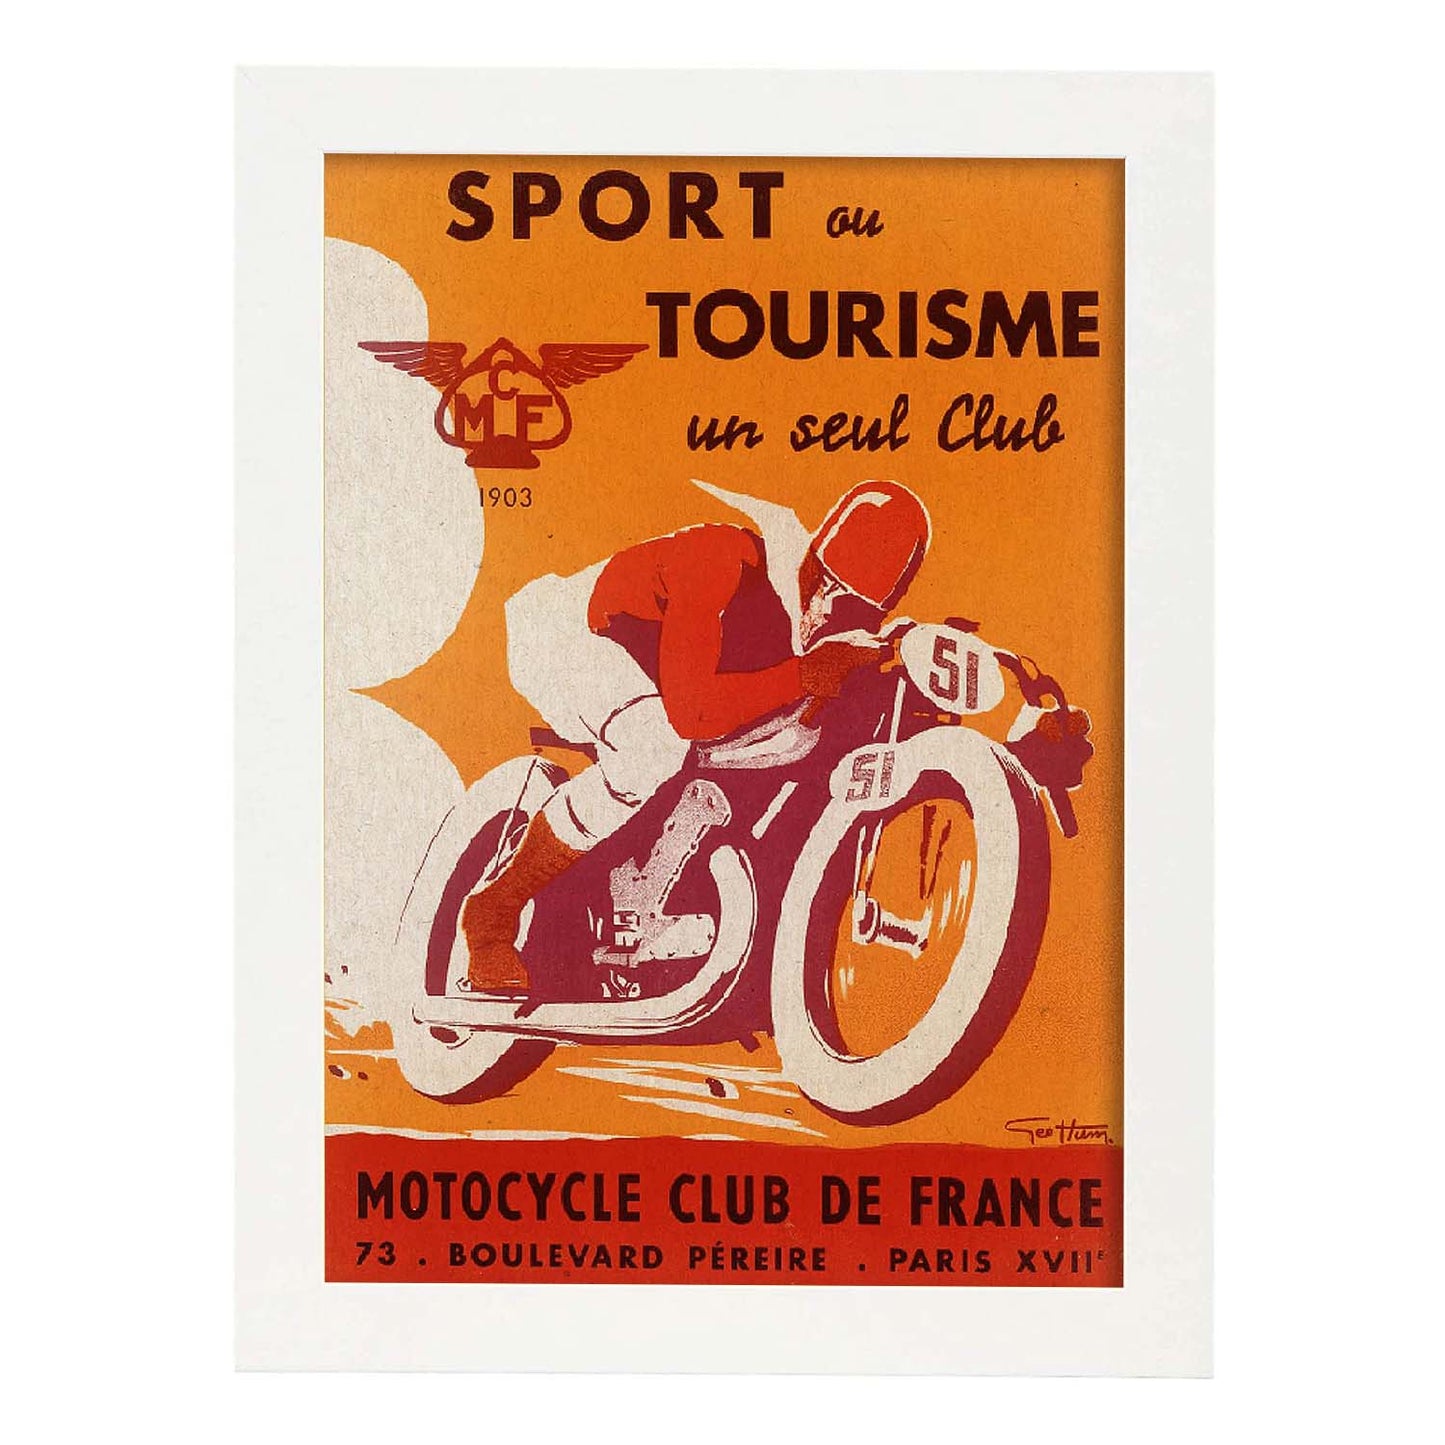 Poster vintage. Anuncio vintage del Sport ou Tourisme un seul Club Motorcycle Club de France.-Artwork-Nacnic-A4-Marco Blanco-Nacnic Estudio SL